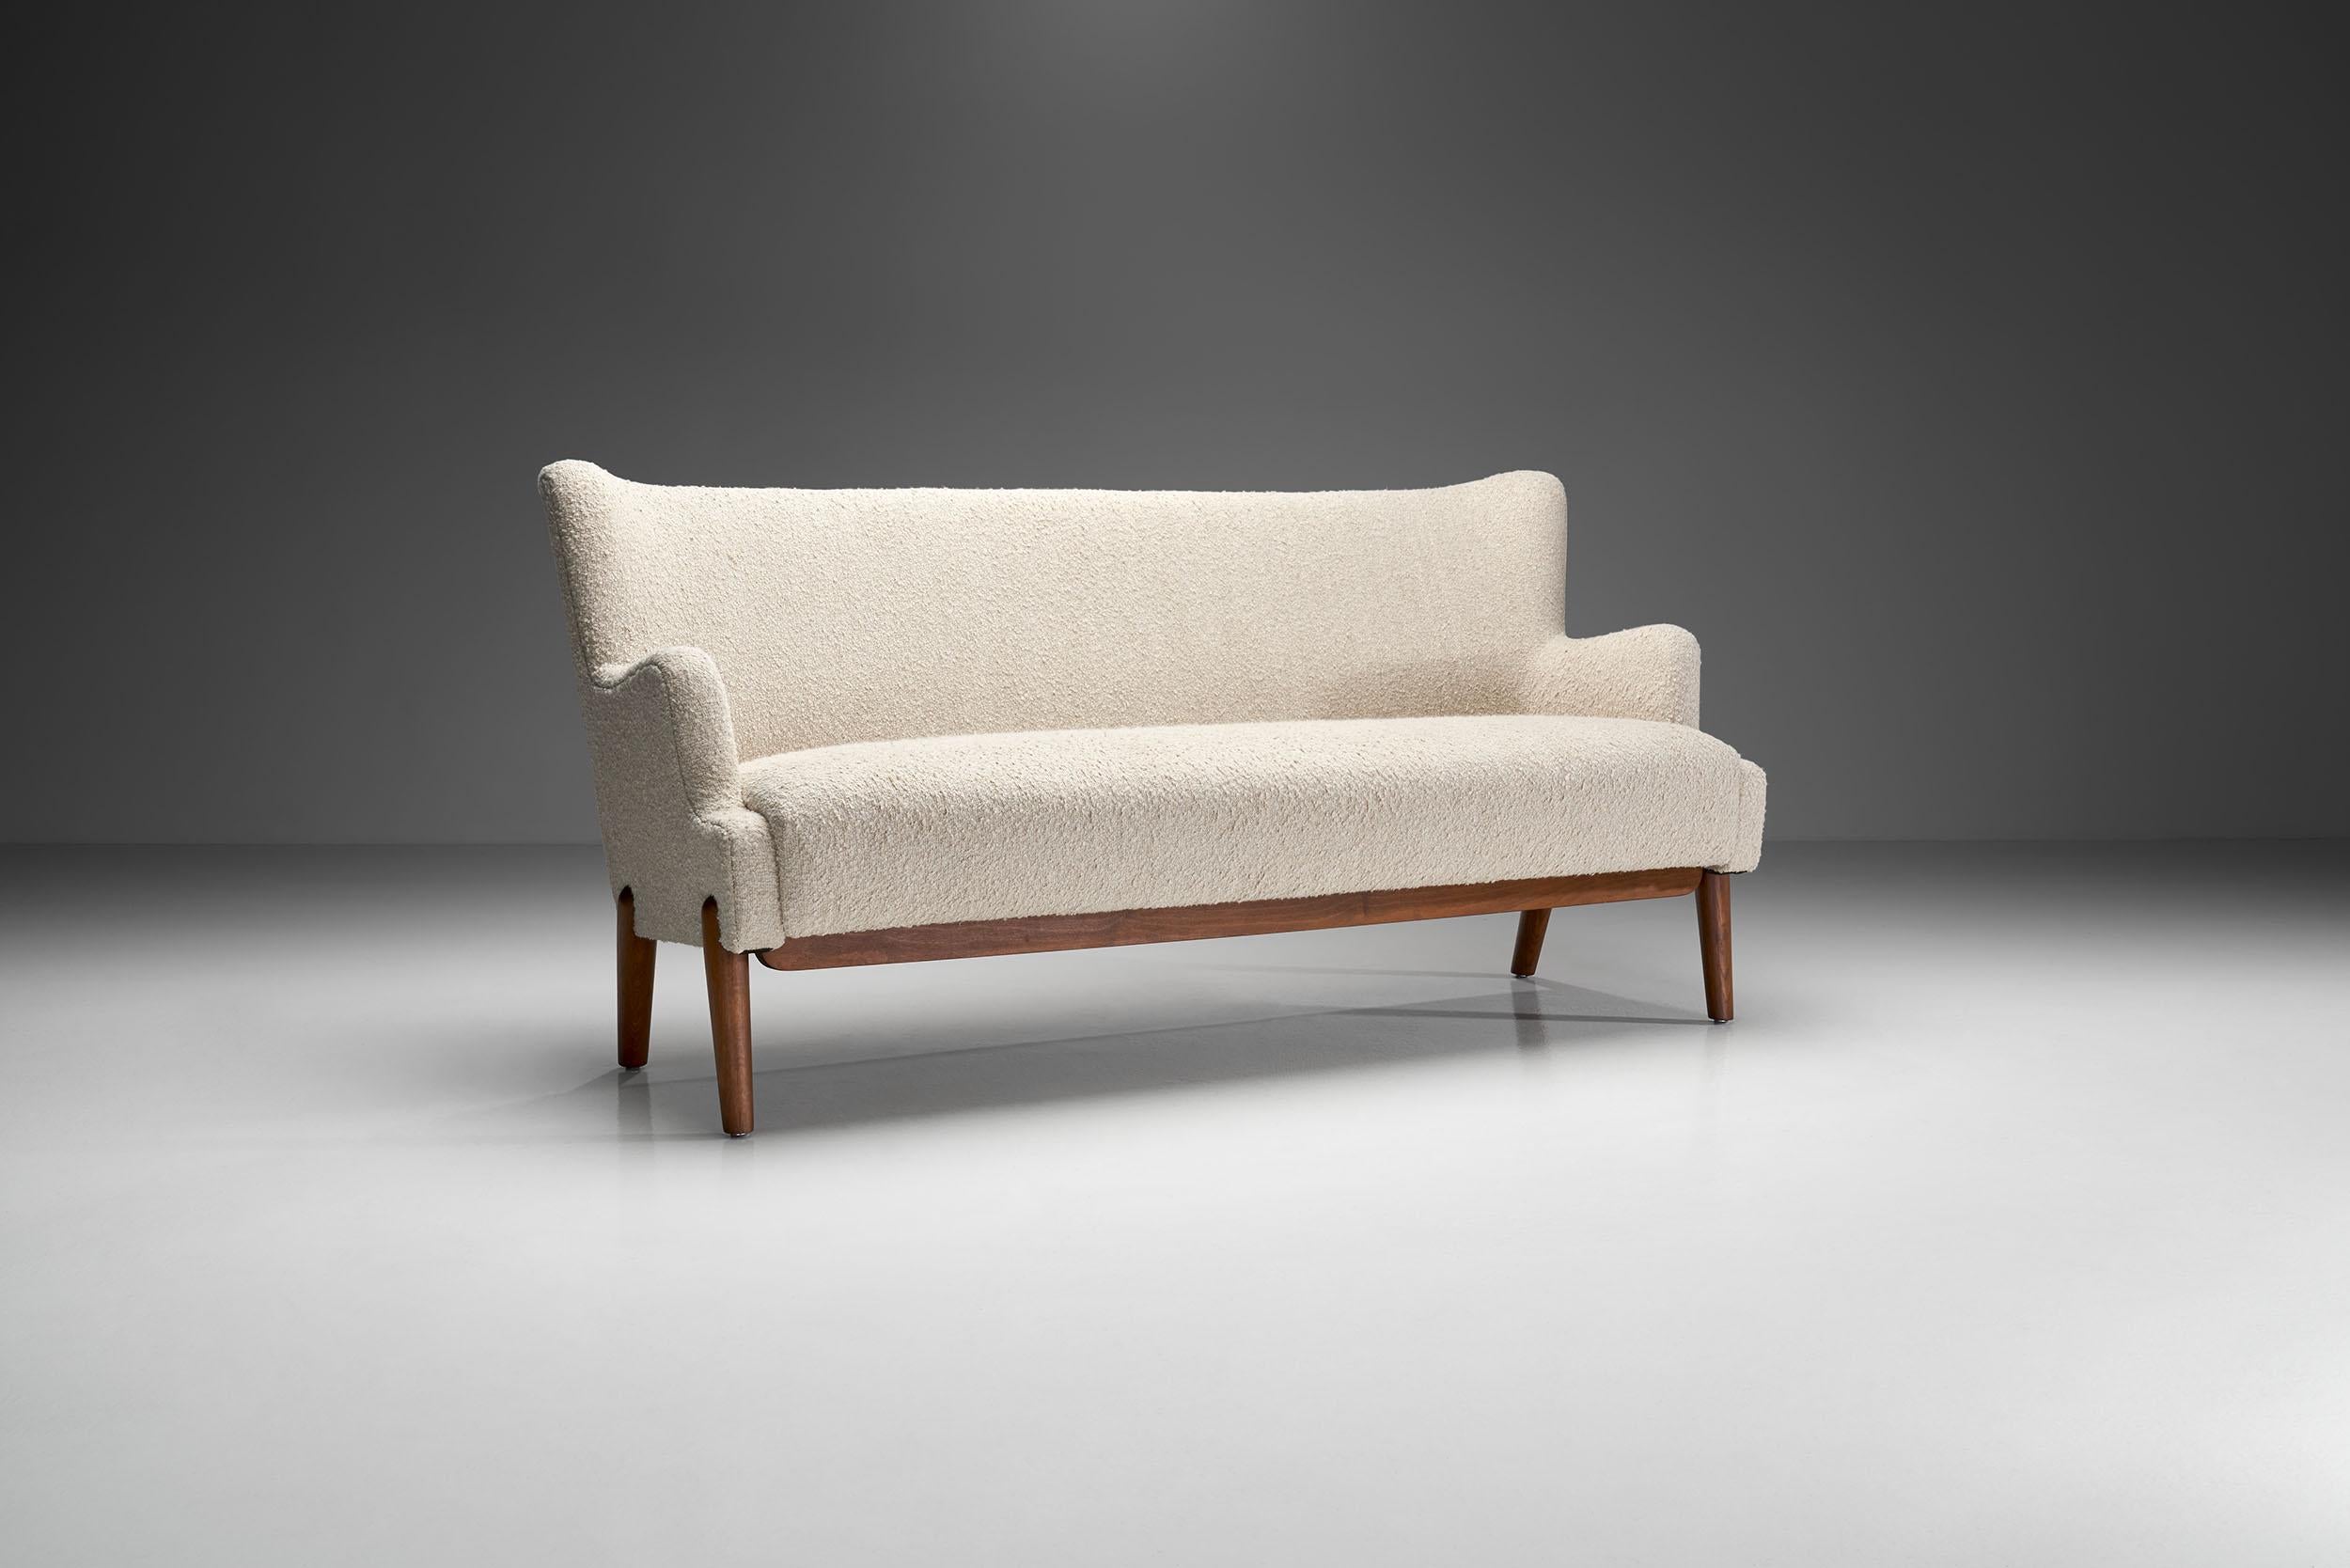 Dieses Dreisitzer-Sofa weist die besten Merkmale des dänischen Designs der Mitte des Jahrhunderts auf. Sein Komfort und seine filigranen Designelemente machen diesen Dreisitzer zum begehrtesten Werk von Eva und Nils Koppel.

Die treppenartige